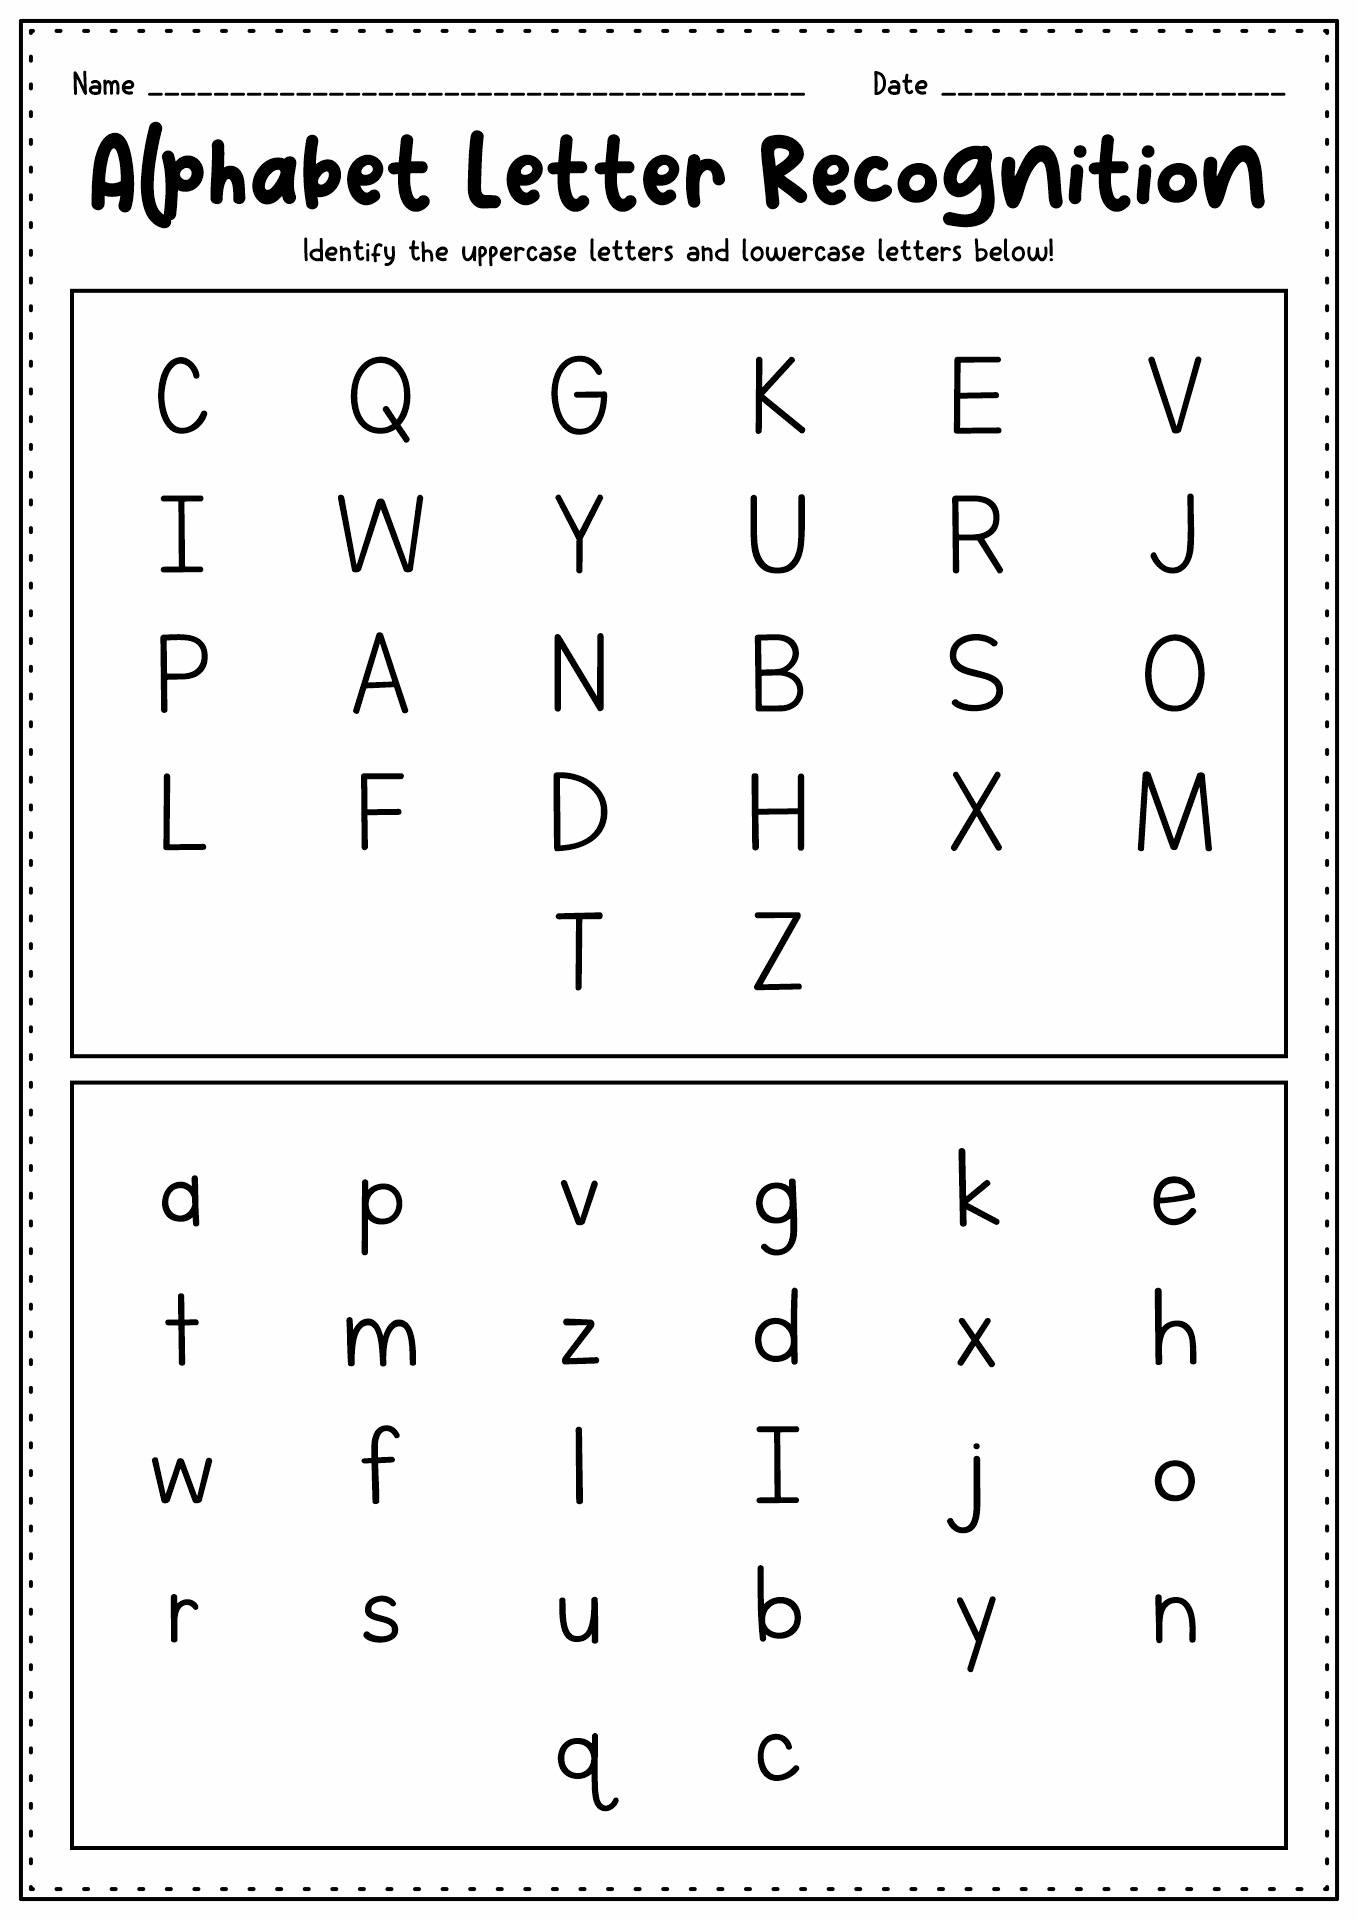 alphabet-letter-recognition-worksheet-color-preschool-crafts